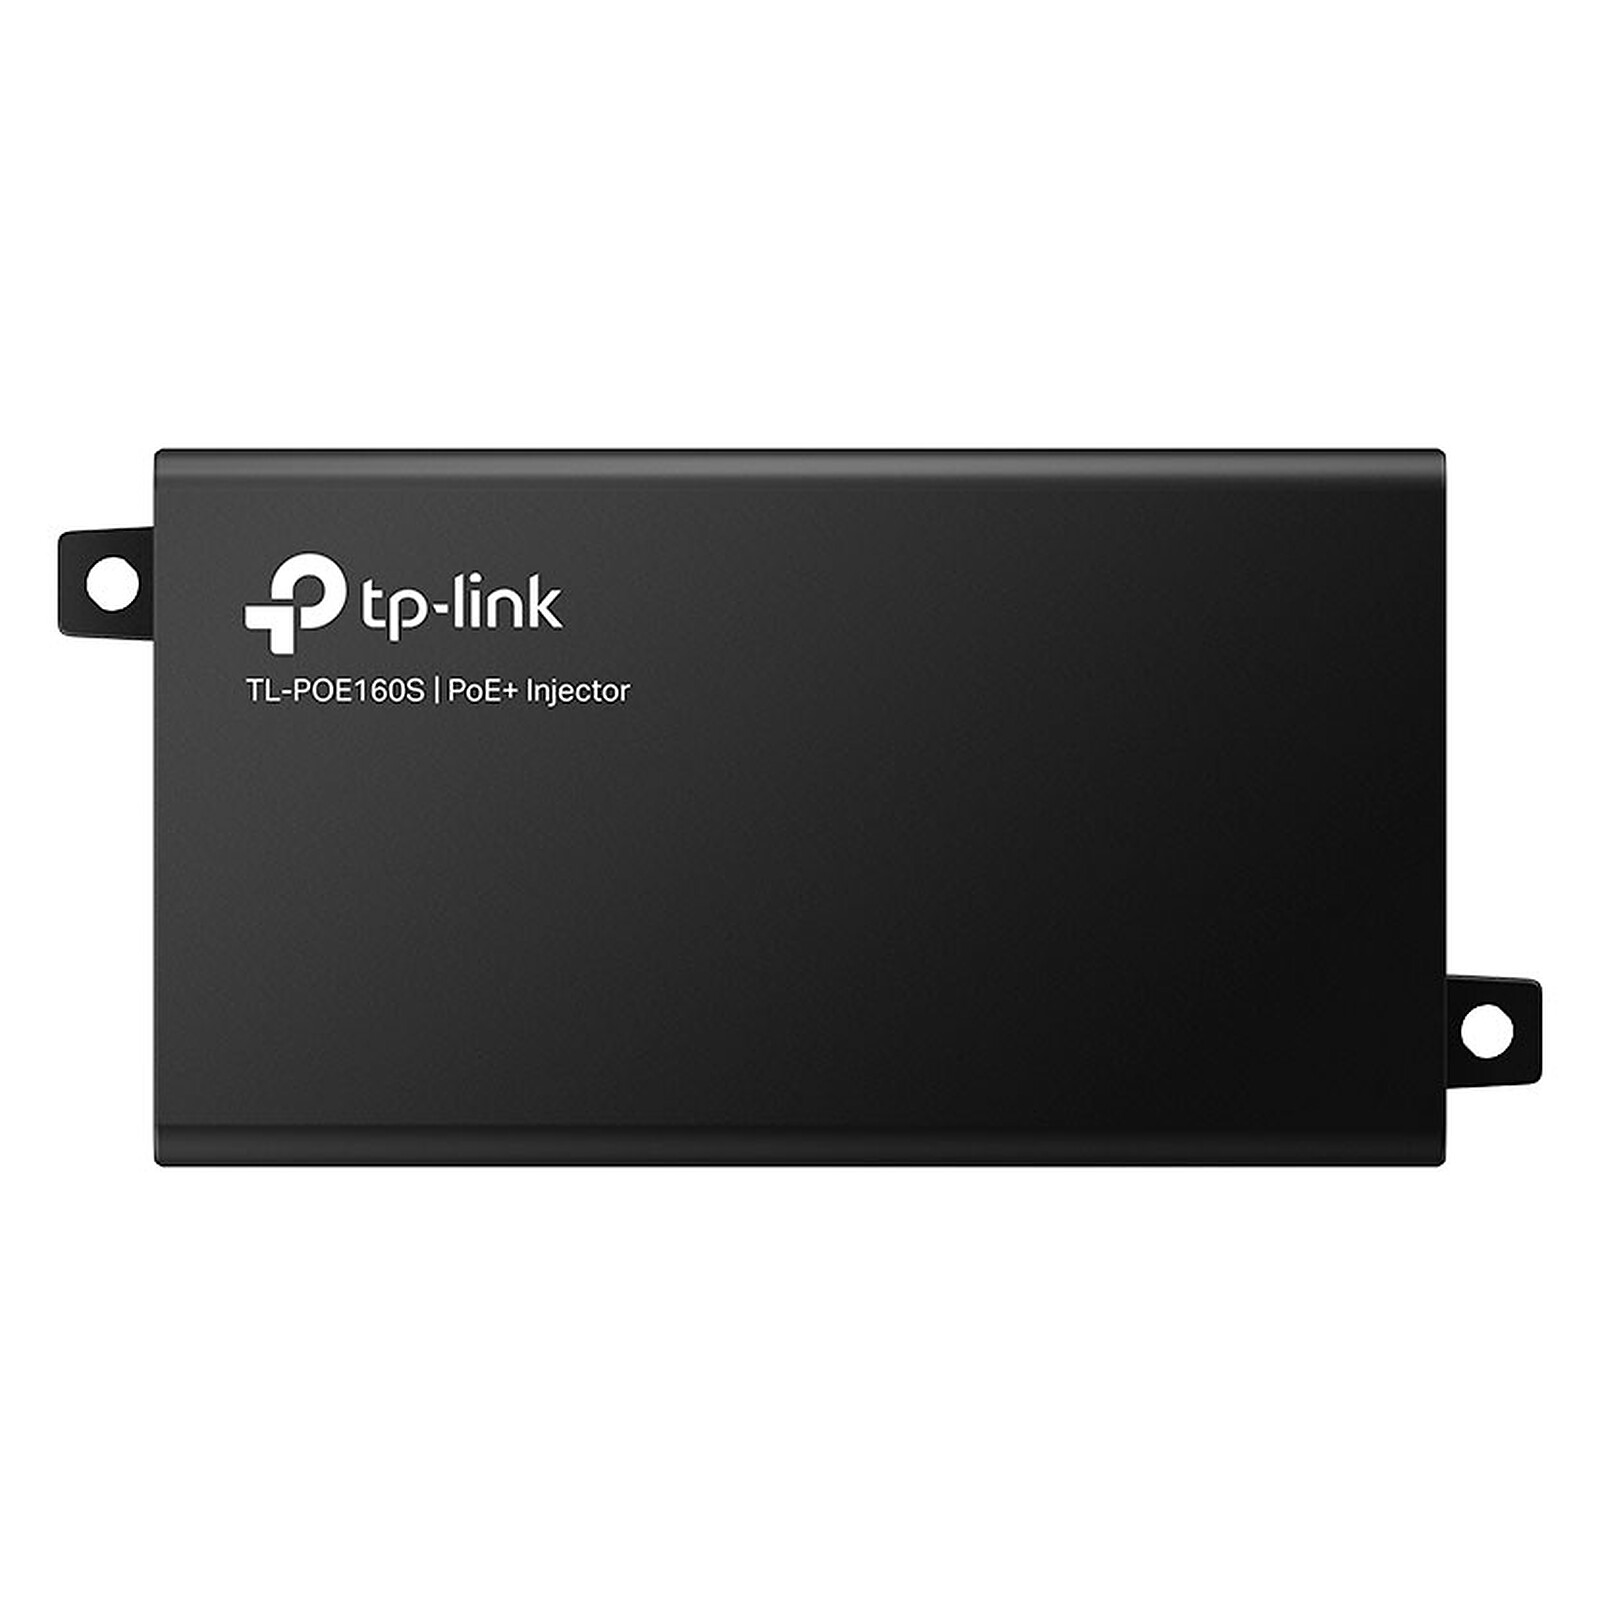 TP-LINK MC220L - Accessoires switch - Garantie 3 ans LDLC